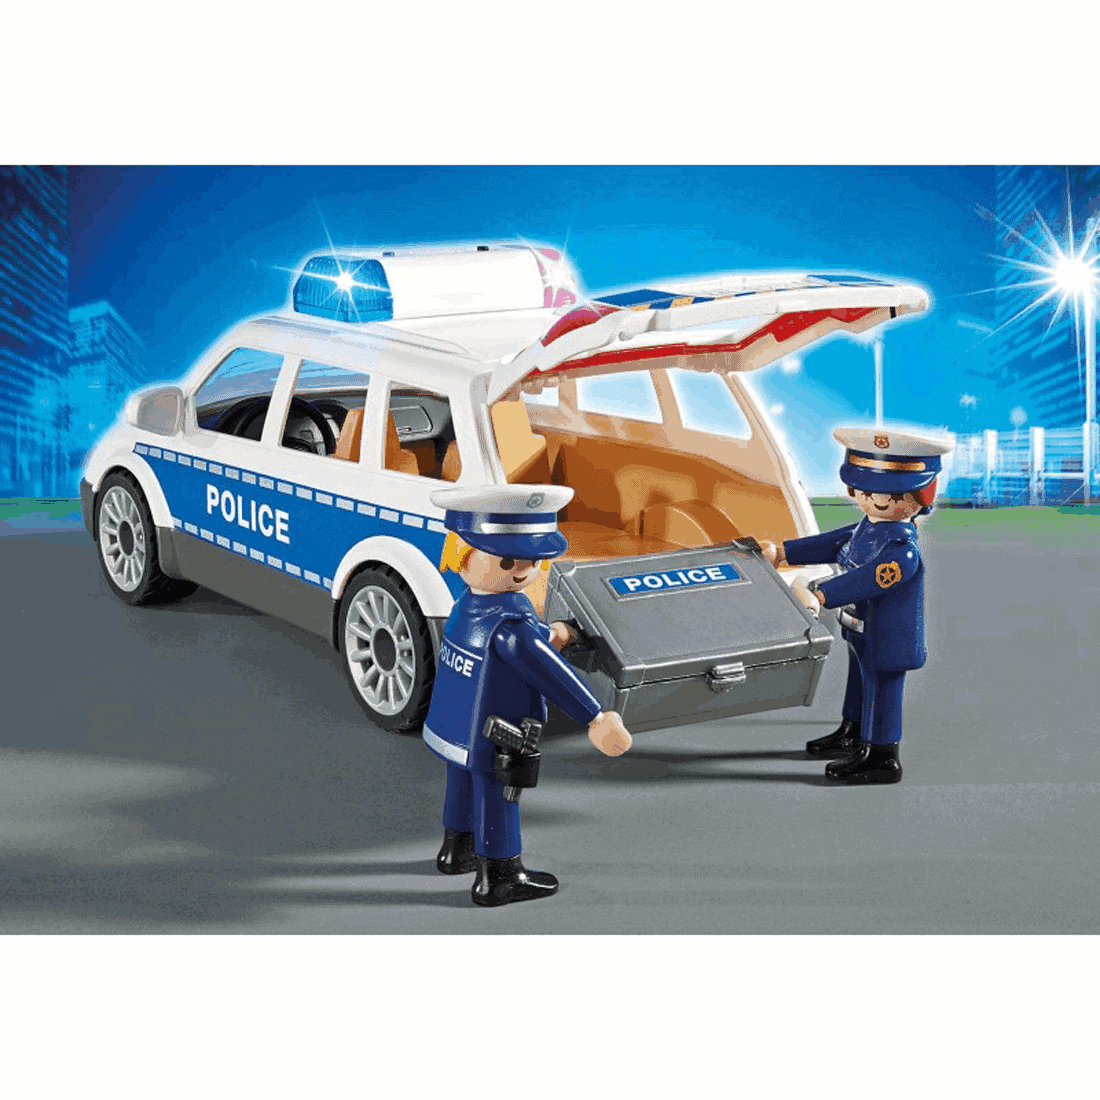 Playmobil - Περιπολικό Όχημα Με Φάρο Και Σειρήνα